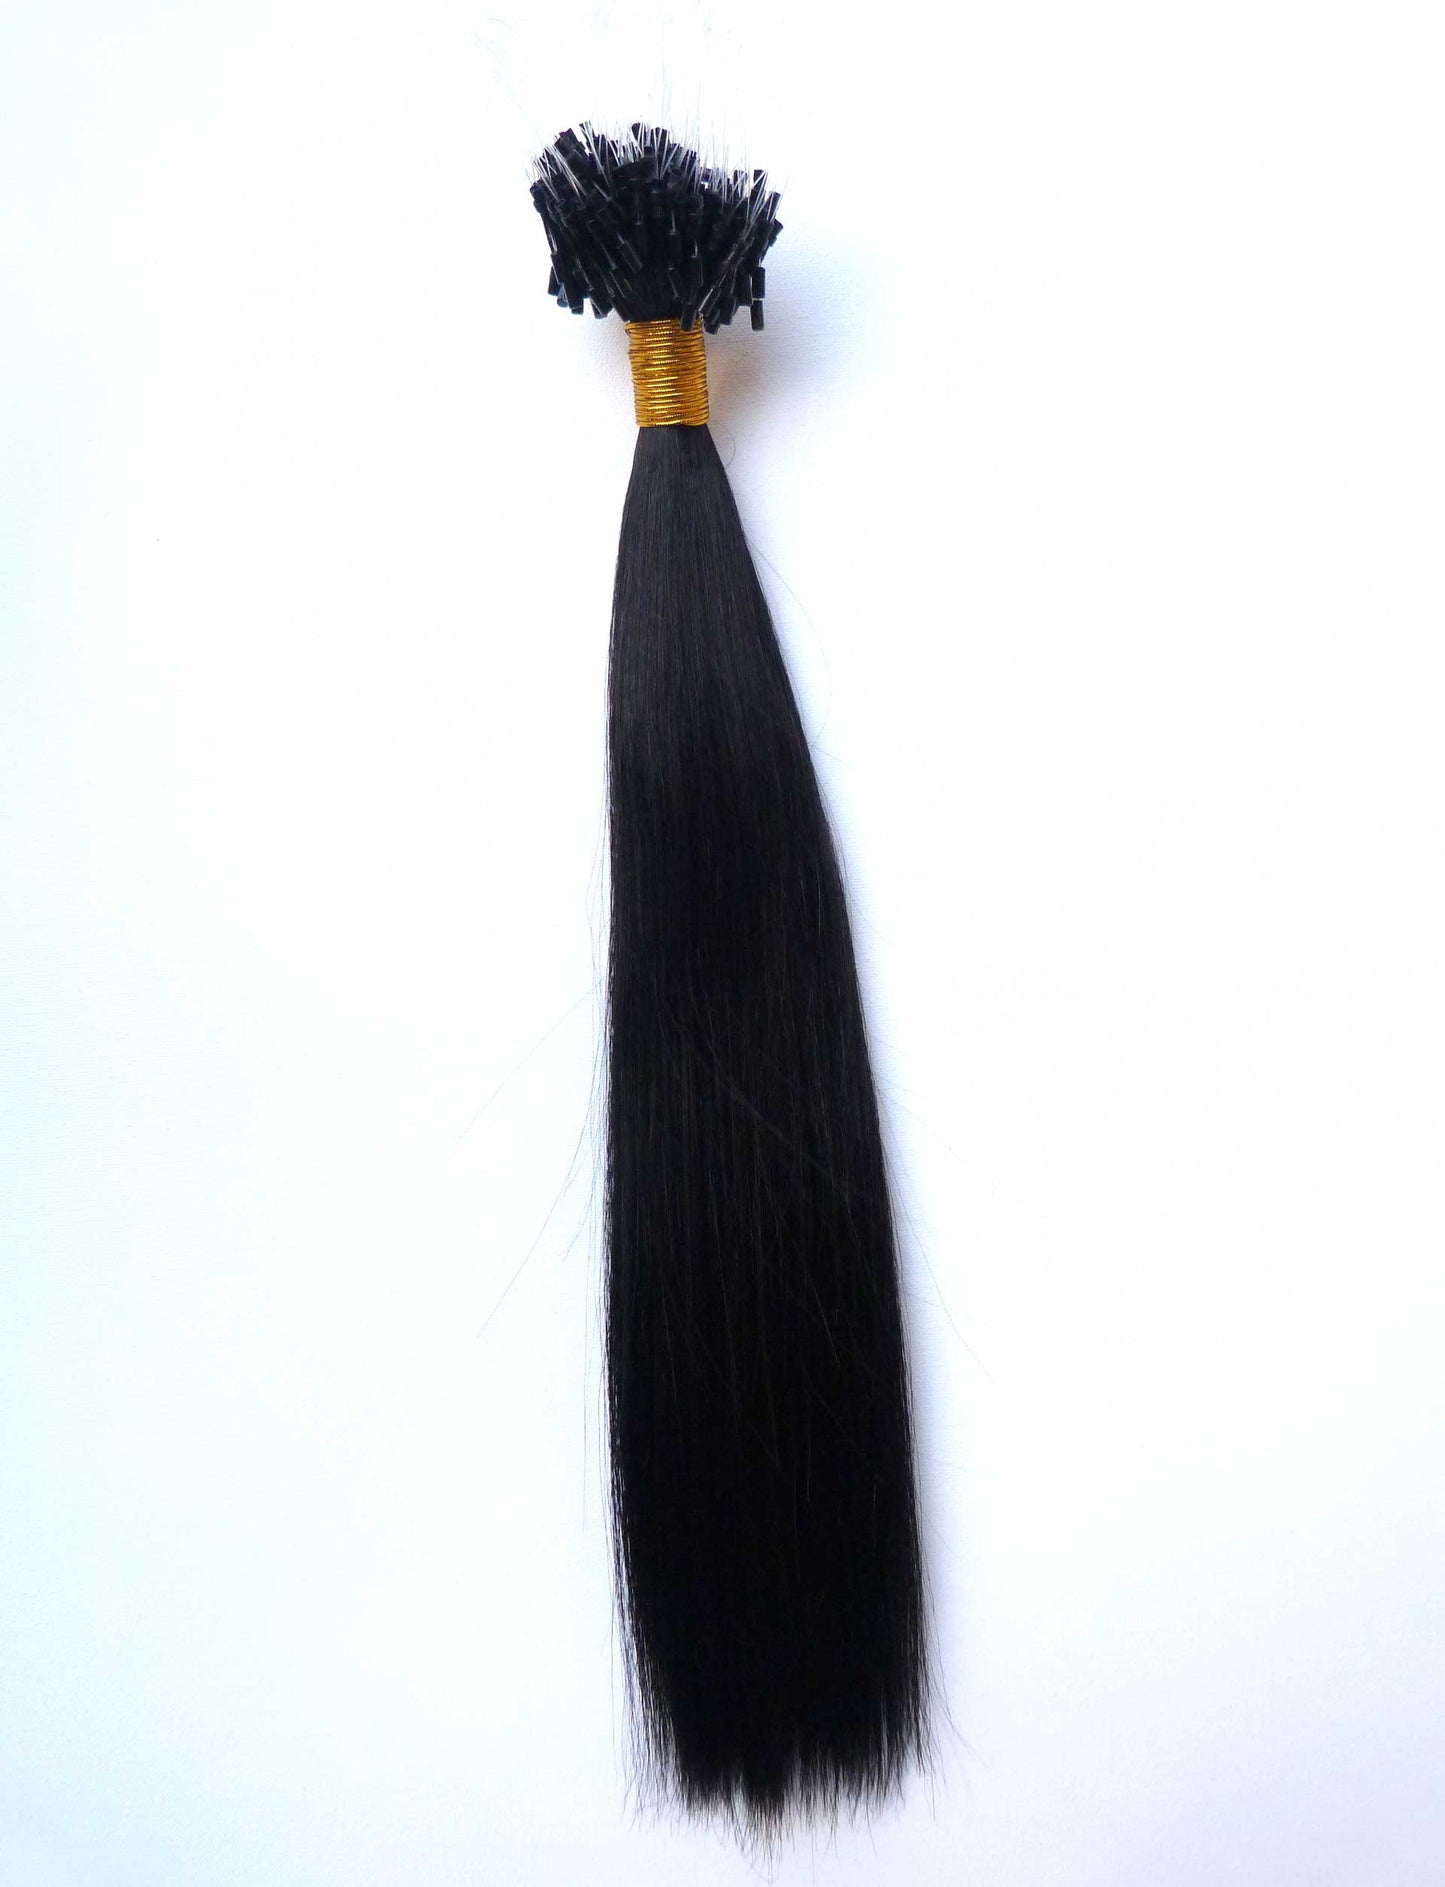 Brazilian virgin human hair extensions - micro loop extensions-virgin hair & beauty, de bästa hårförlängningarna, äkta jungfruligt människohår.